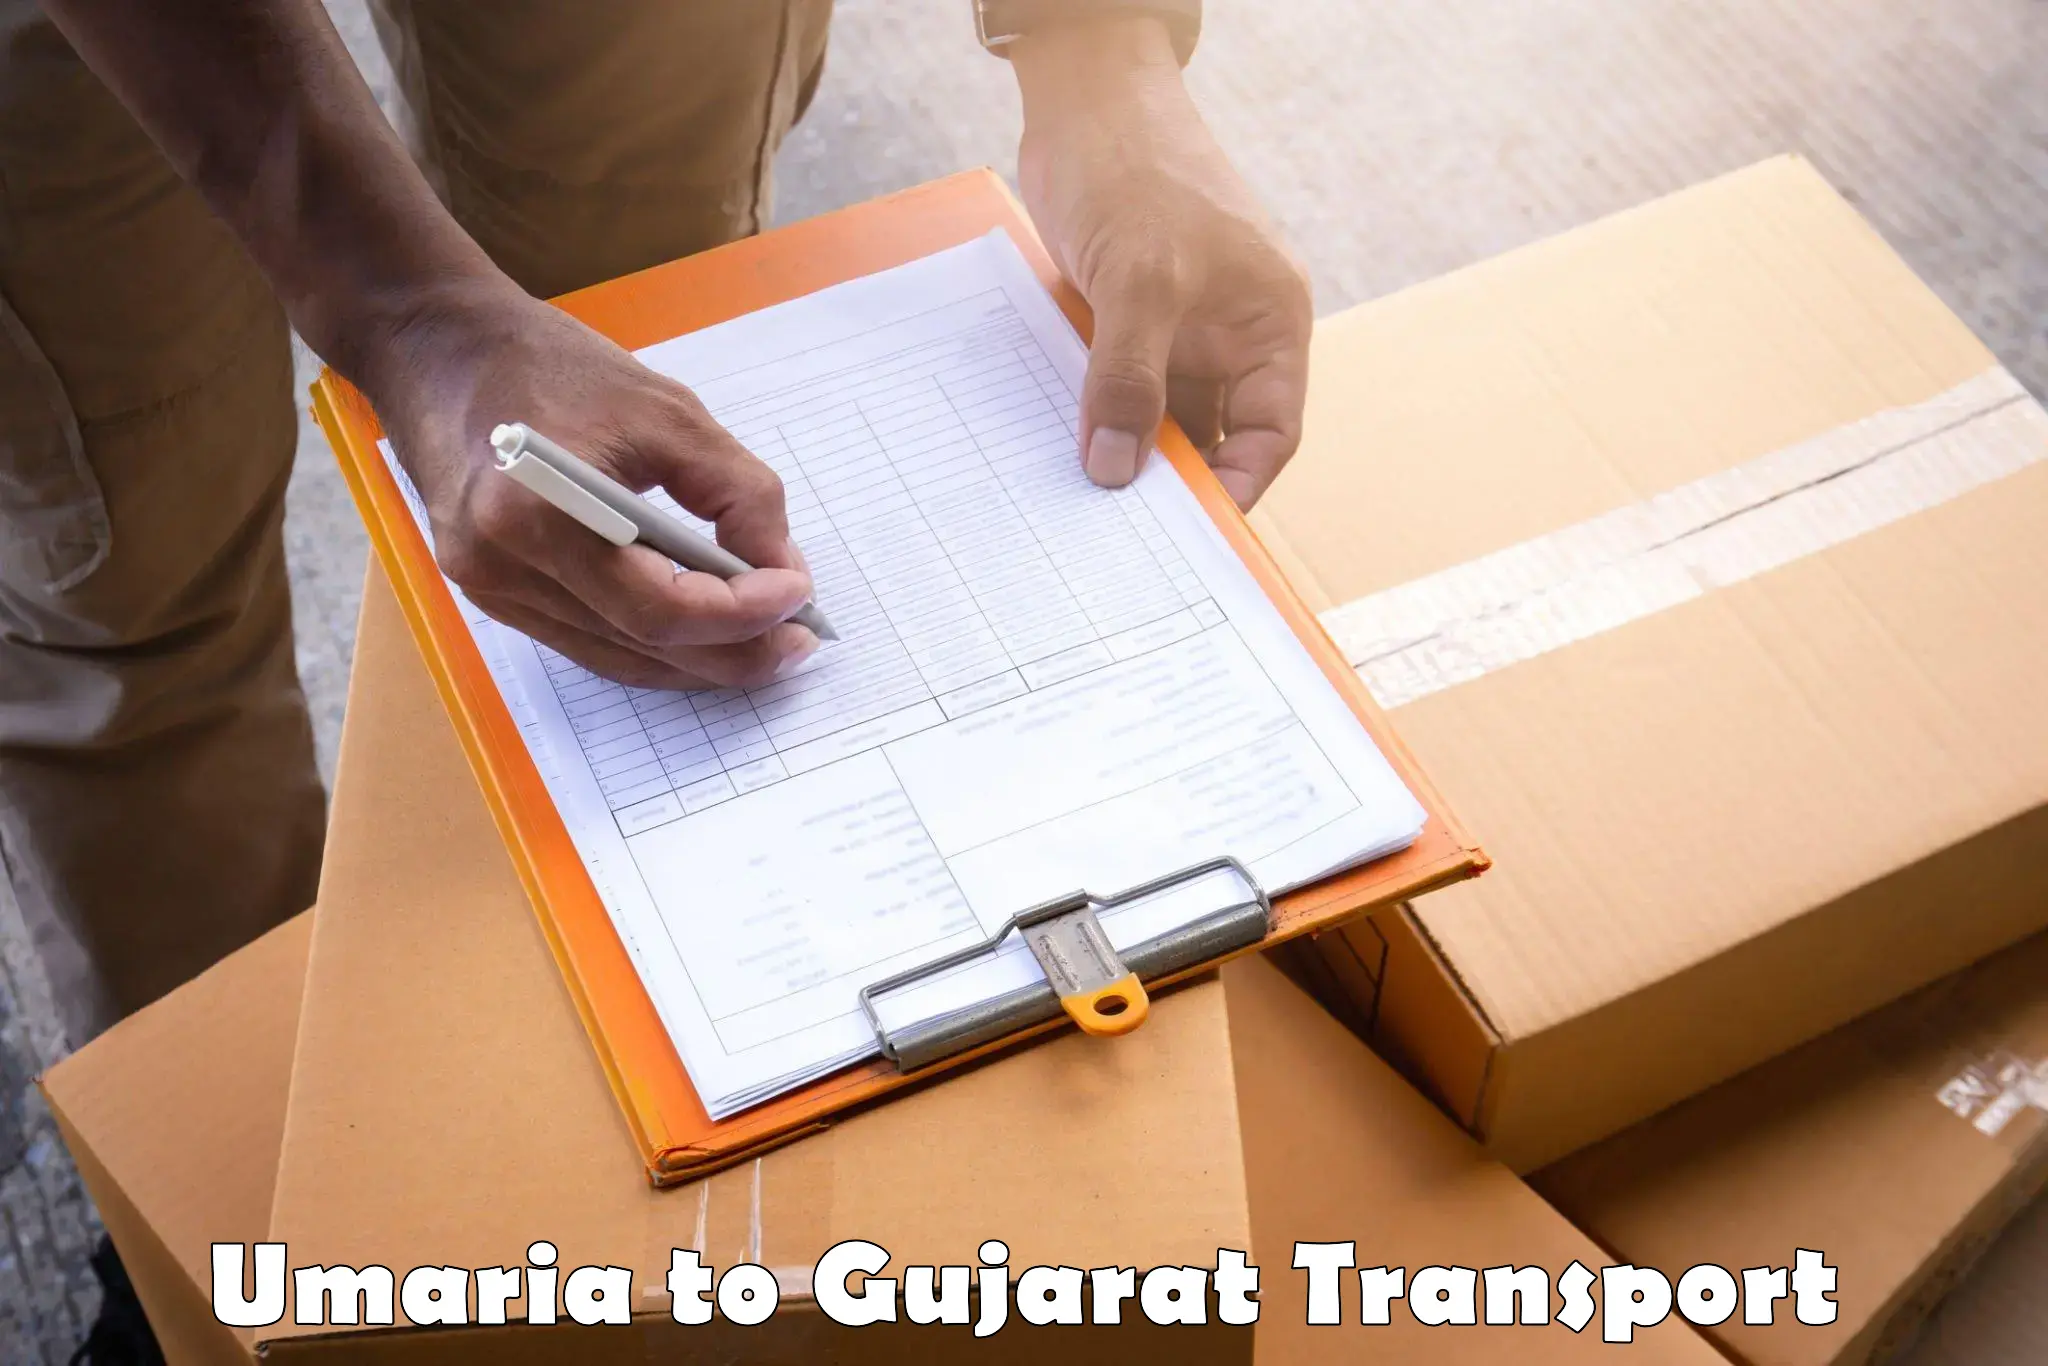 Transport in sharing in Umaria to Patan Gujarat